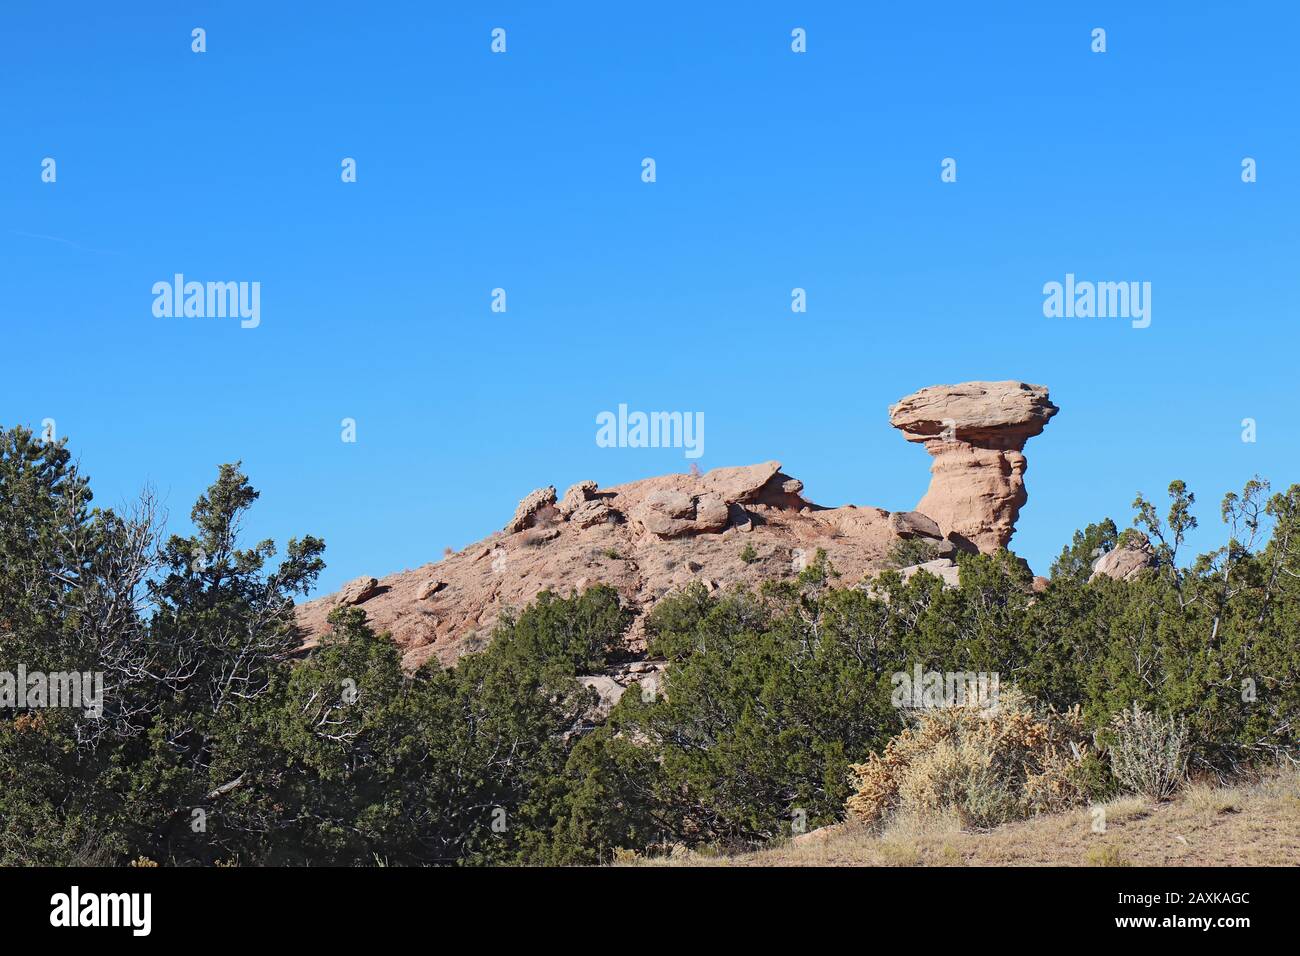 Das Wahrzeichen aus rosafarbenem Sandstein, Camel Rock, in der Nähe des Tesuque Pueblo, nur wenige Kilometer nördlich von Santa Fe, New Mexico Stockfoto